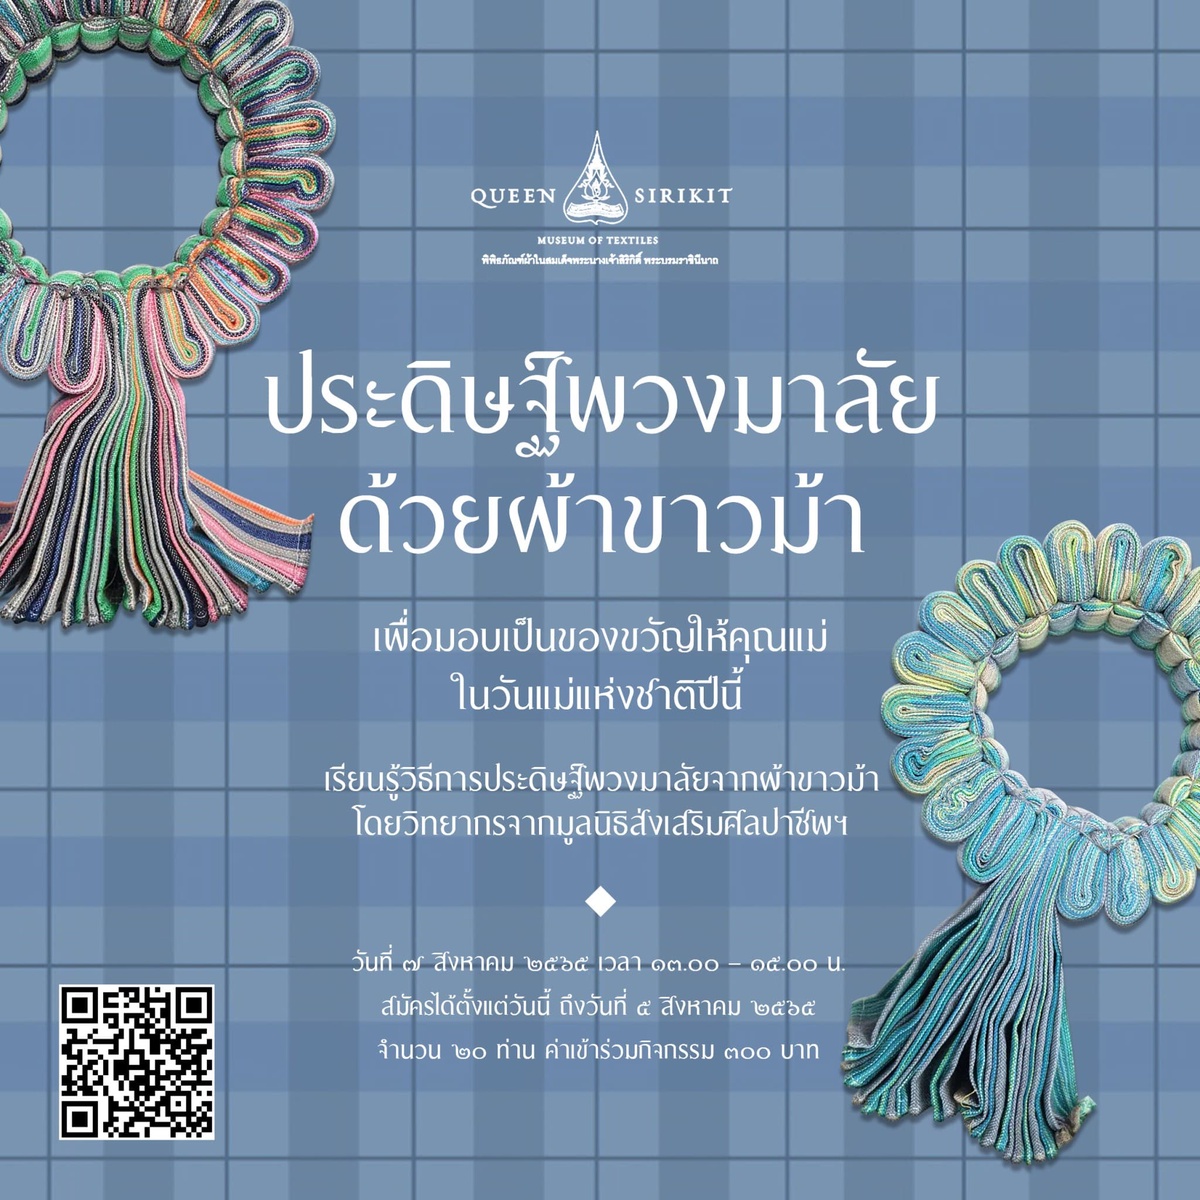 พิพิธภัณฑ์ผ้าฯ ชวนร่วมกิจกรรมพิเศษในเดือนสิงหาคม ประดิษฐ์พวงมาลัยด้วยผ้าขาวม้า มอบเป็นของขวัญวันแม่และวันผ้าไทยแห่งชาติ